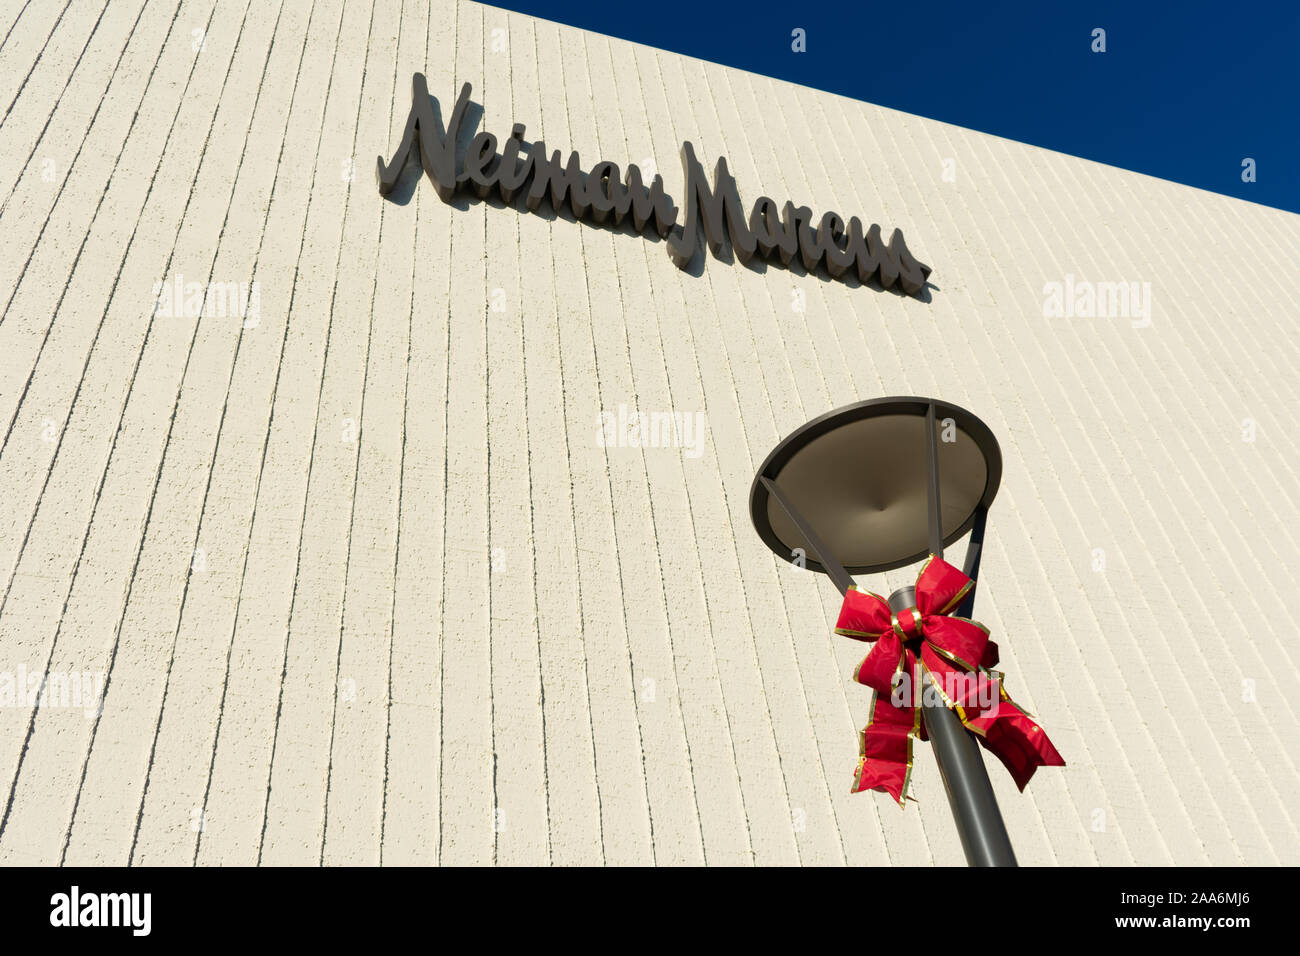 Maison de vacances de Noël sur bow street light. Magasin de luxe Neiman Marcus. - Palo Alto, CA, USA - Novembre 2019 Banque D'Images